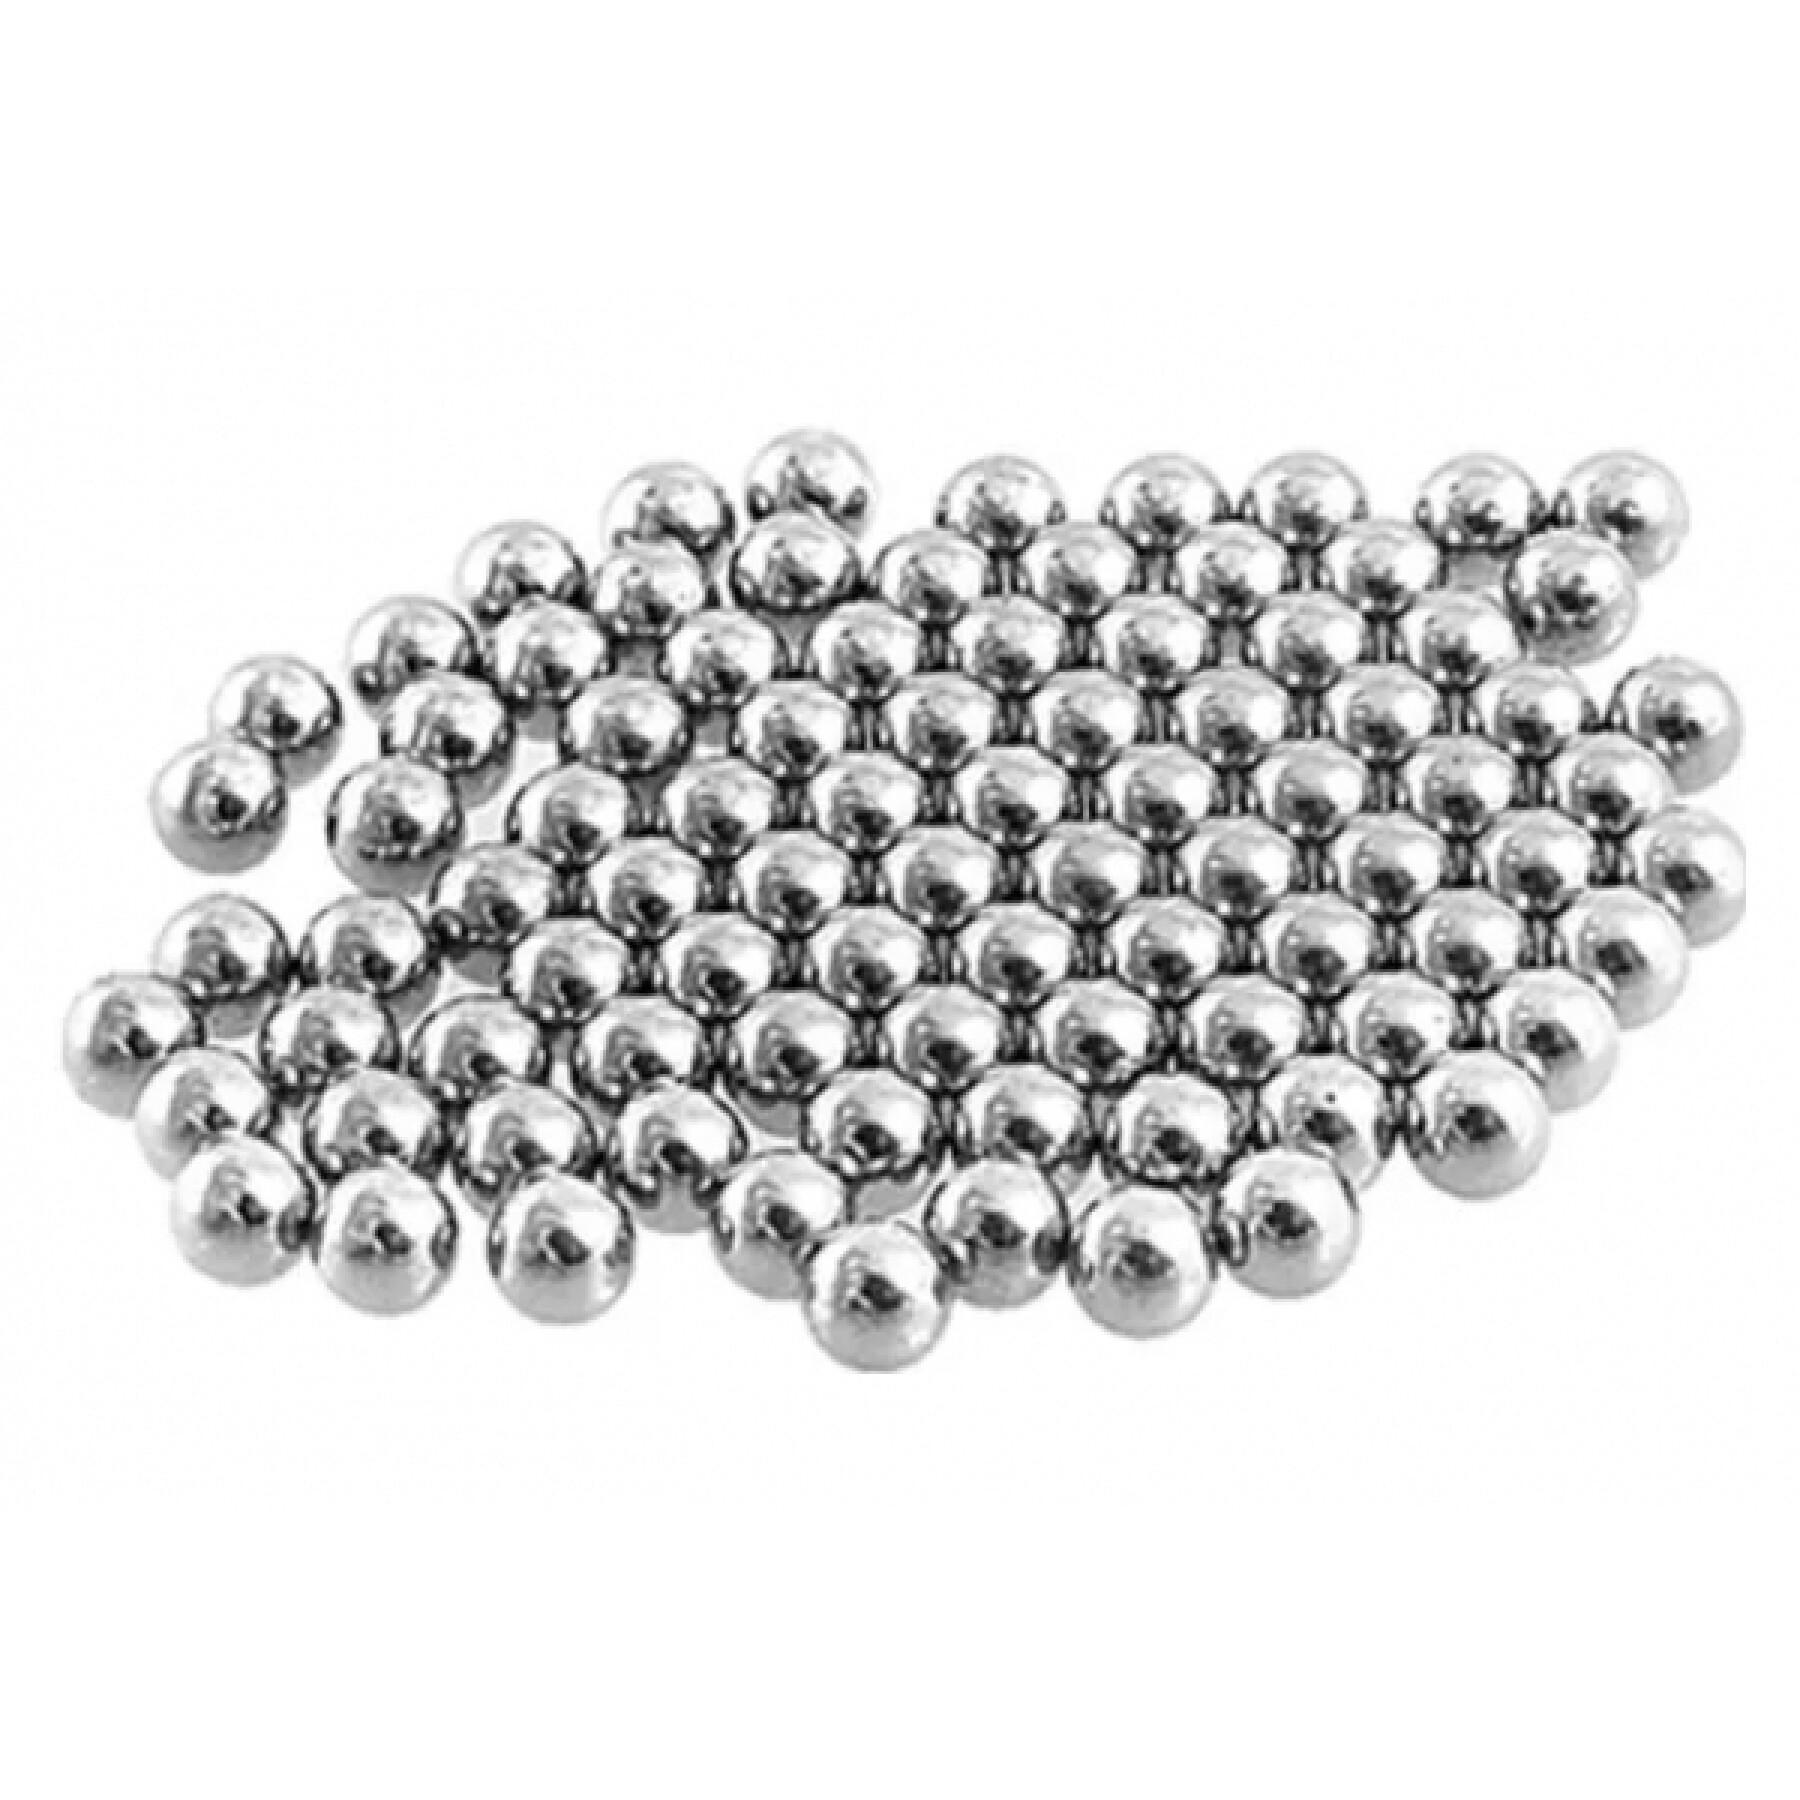 Batch of 100 bearing balls Elvedes 1/4"